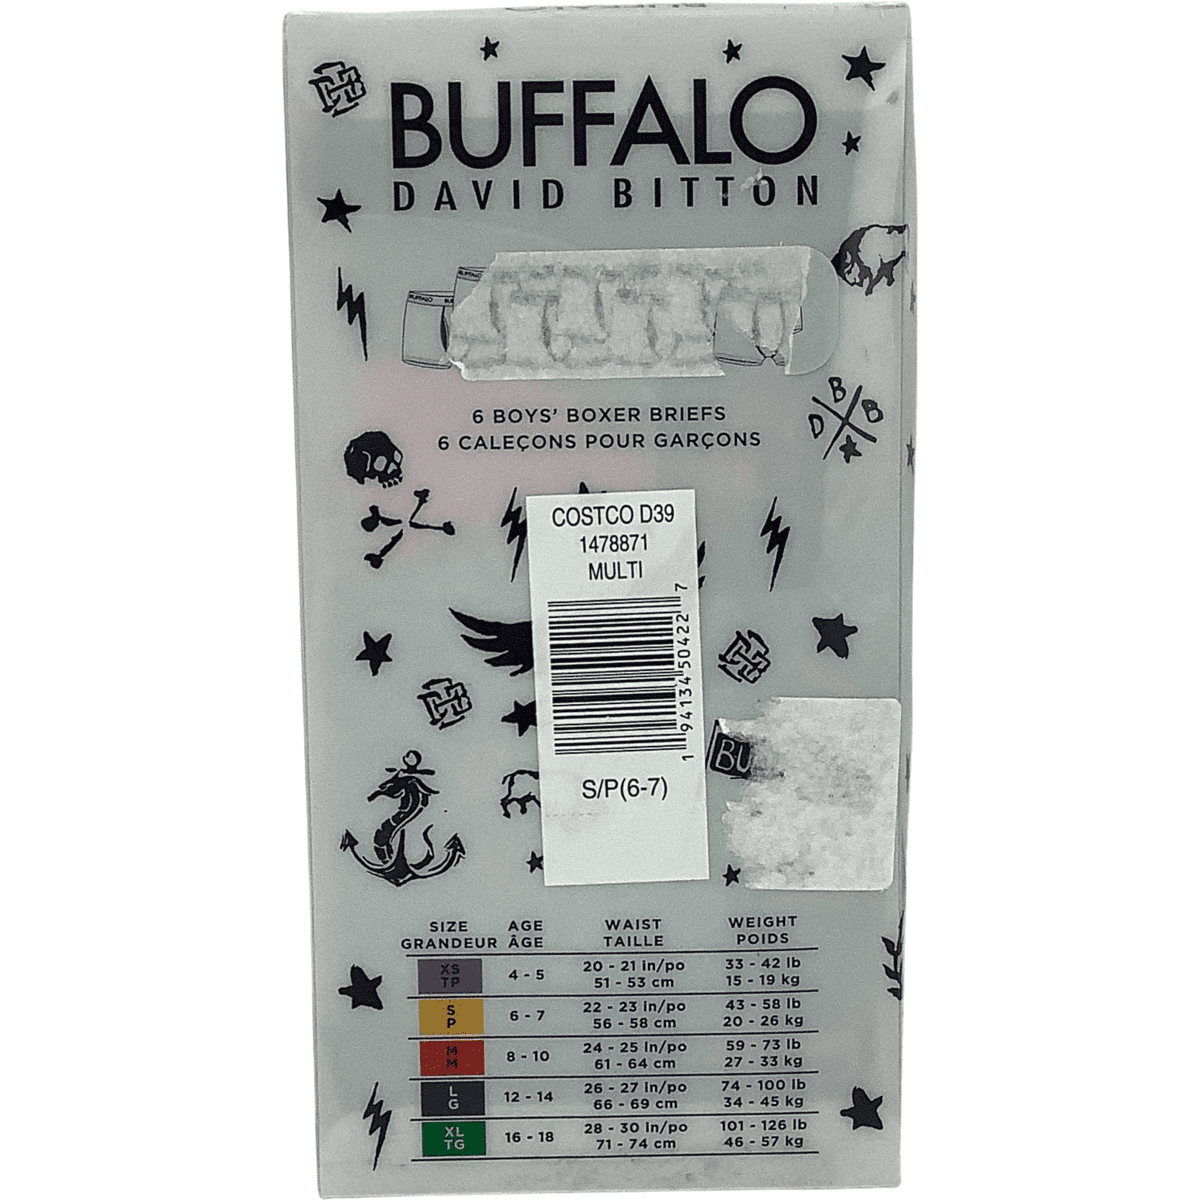 Buffalo David Bitton Boy's Boxer Briefs / Boy's Underwear / Red